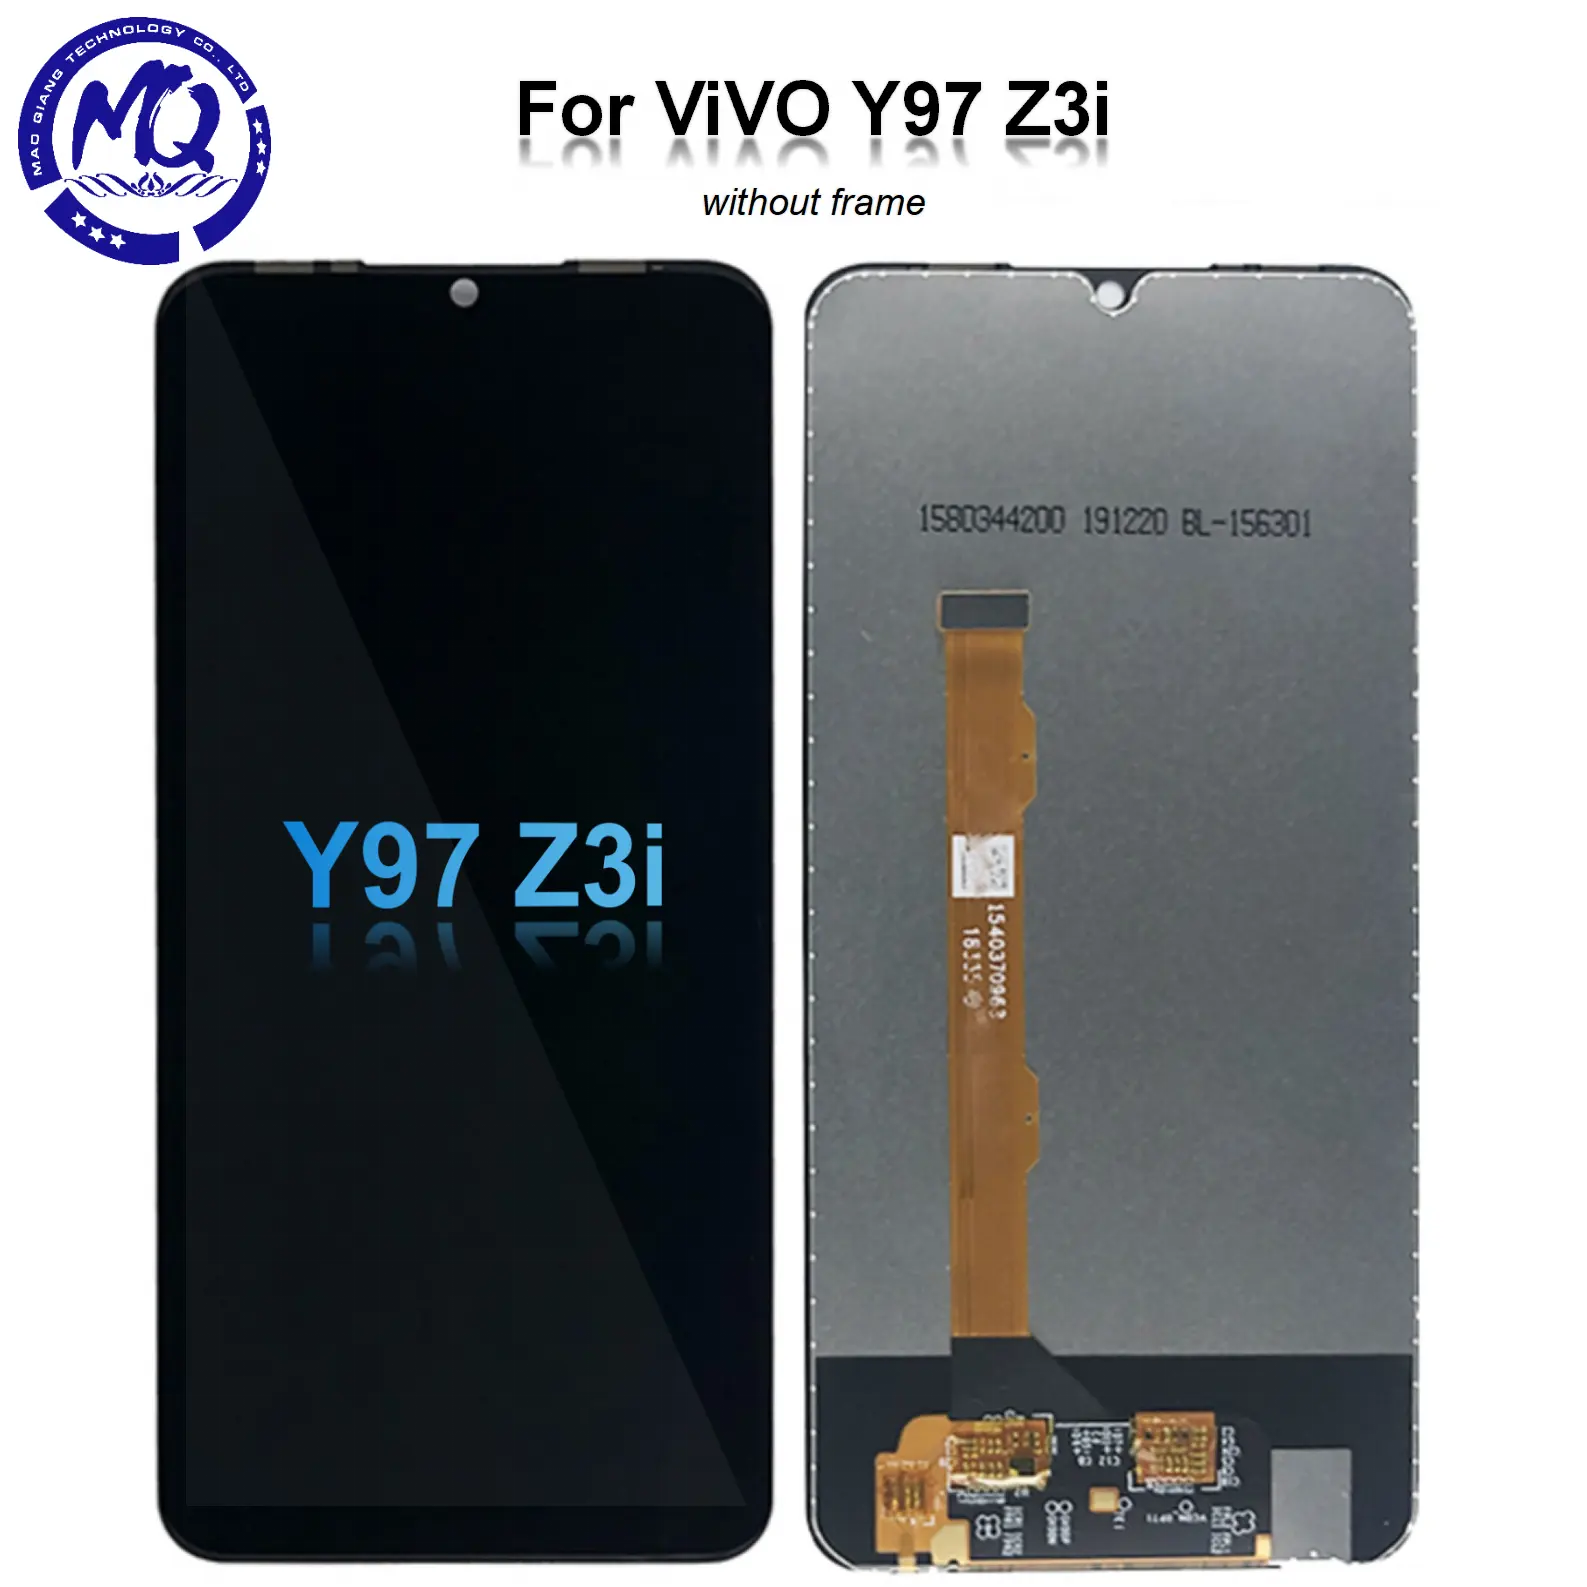 एलसीडी के लिए विवो Y97 Z3i एलसीडी टच स्क्रीन विधानसभा के साथ विवो Y97 Z3i स्क्रीन प्रदर्शन के लिए मोबाइल फोन एलसीडी के लिए विवो Y97 Z3i